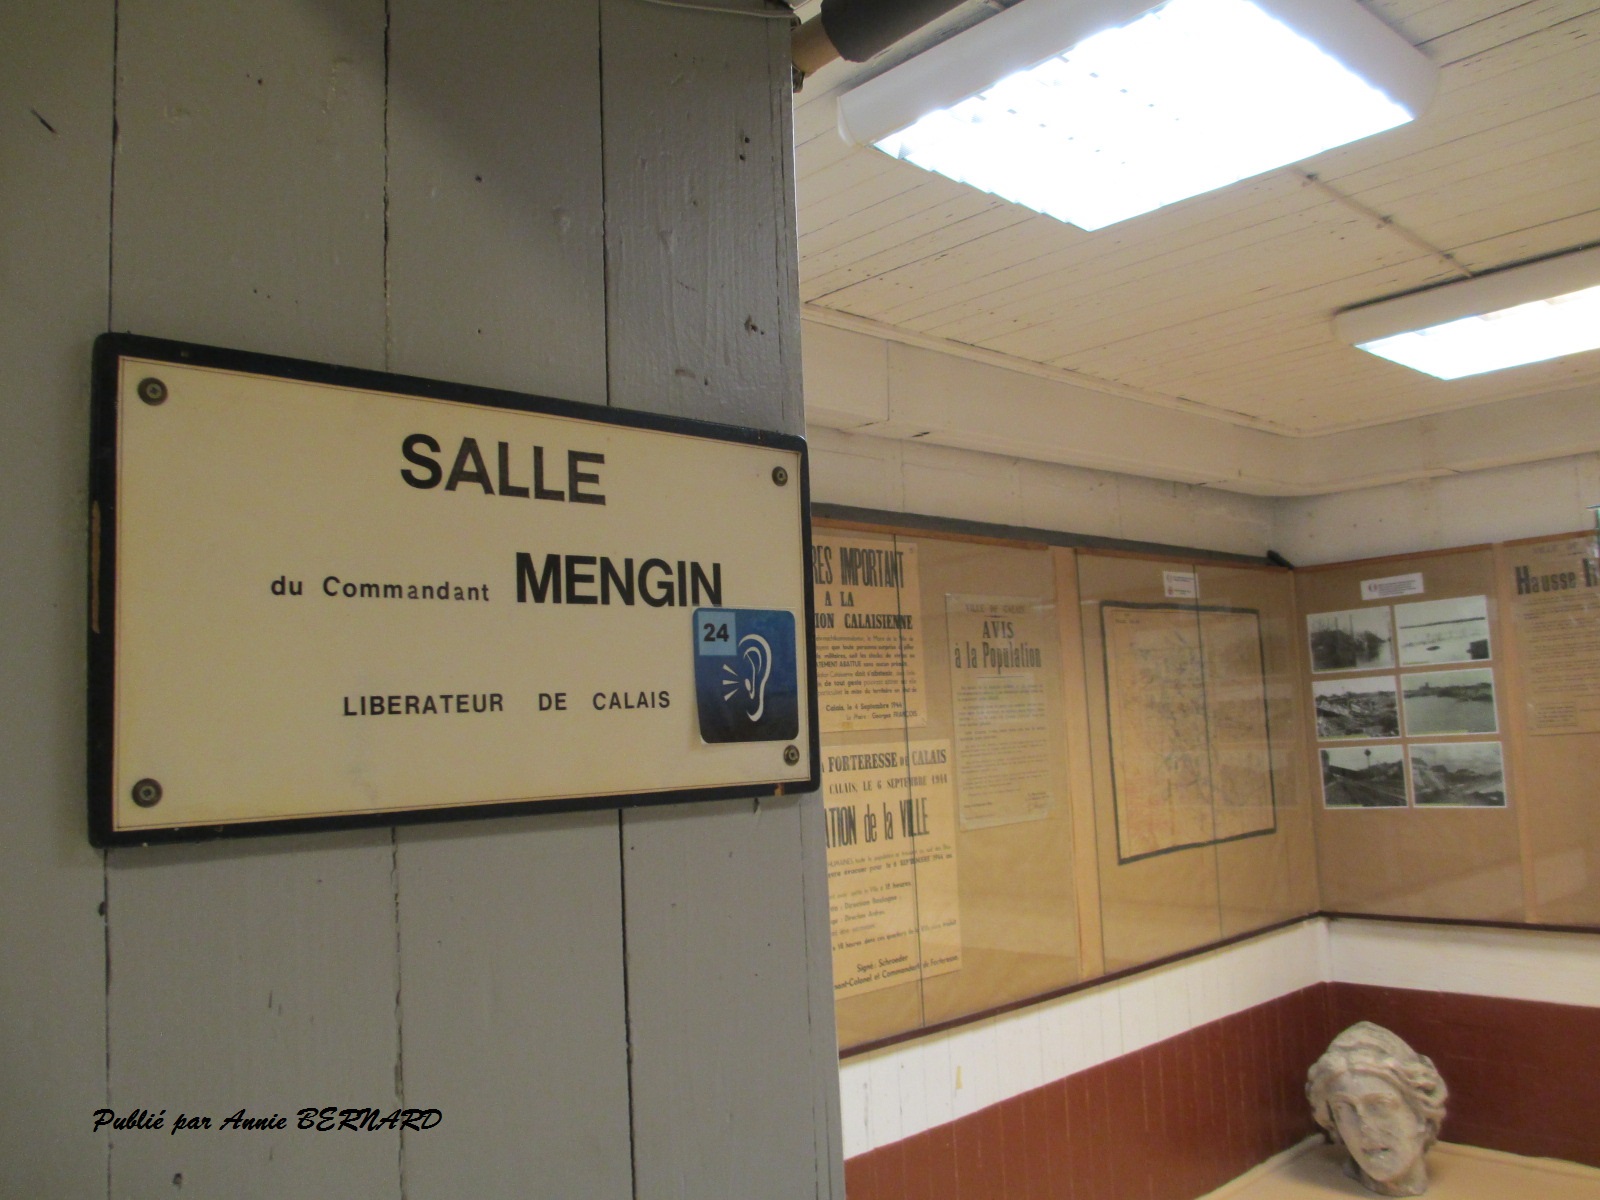 Salle pour le Commandant Mengin, libérateur de Calais